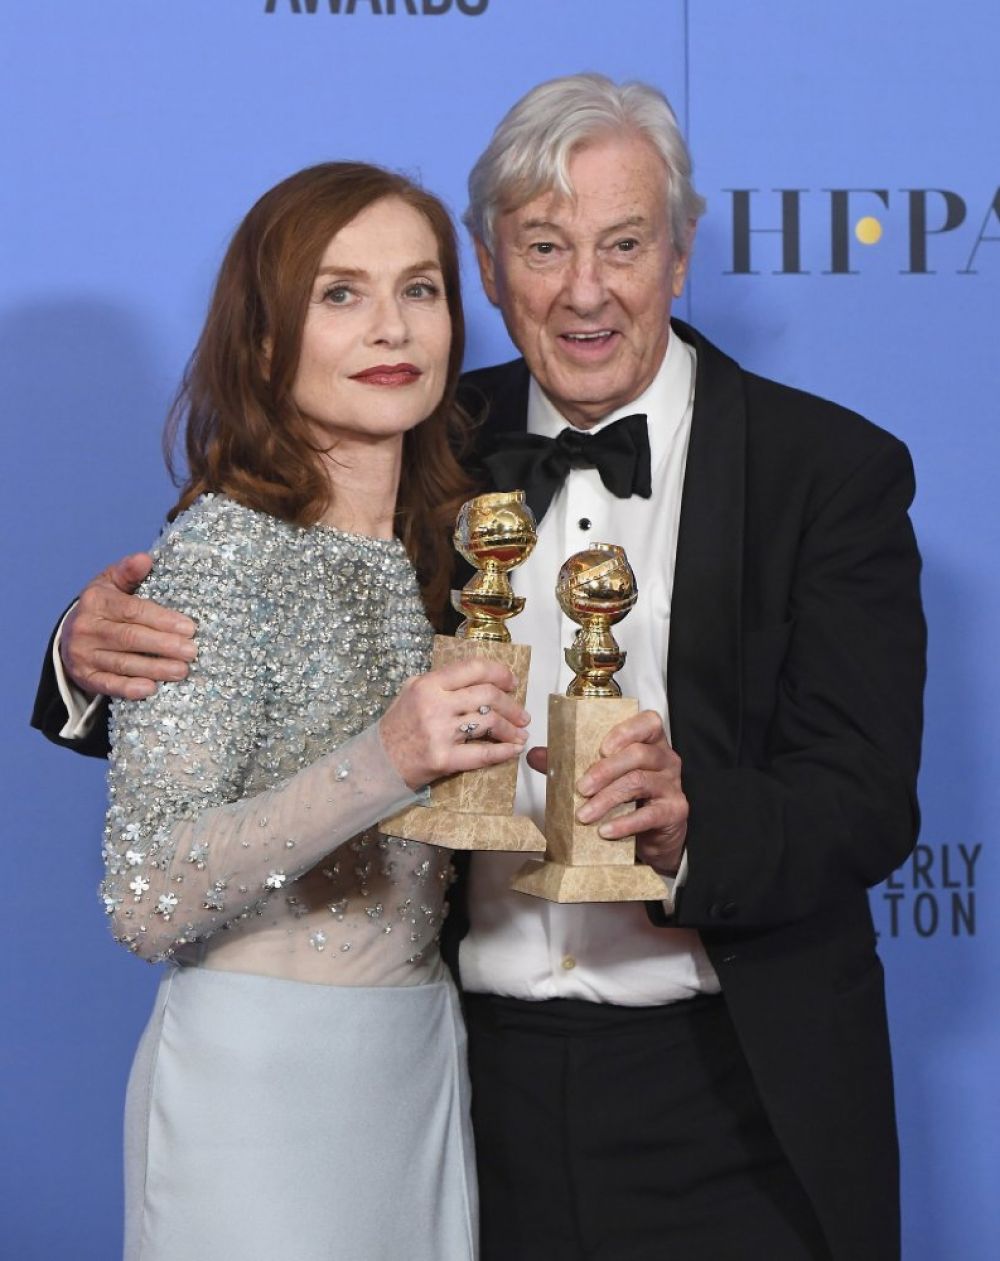 Французская актриса Изабель Юпер получила приз за лучшую женскую драматическую роль за триллер «Она». Французская лента также принесла Золотой глобус режиссеру Полу Верховену, став лучшим фильмом на иностранном языке.